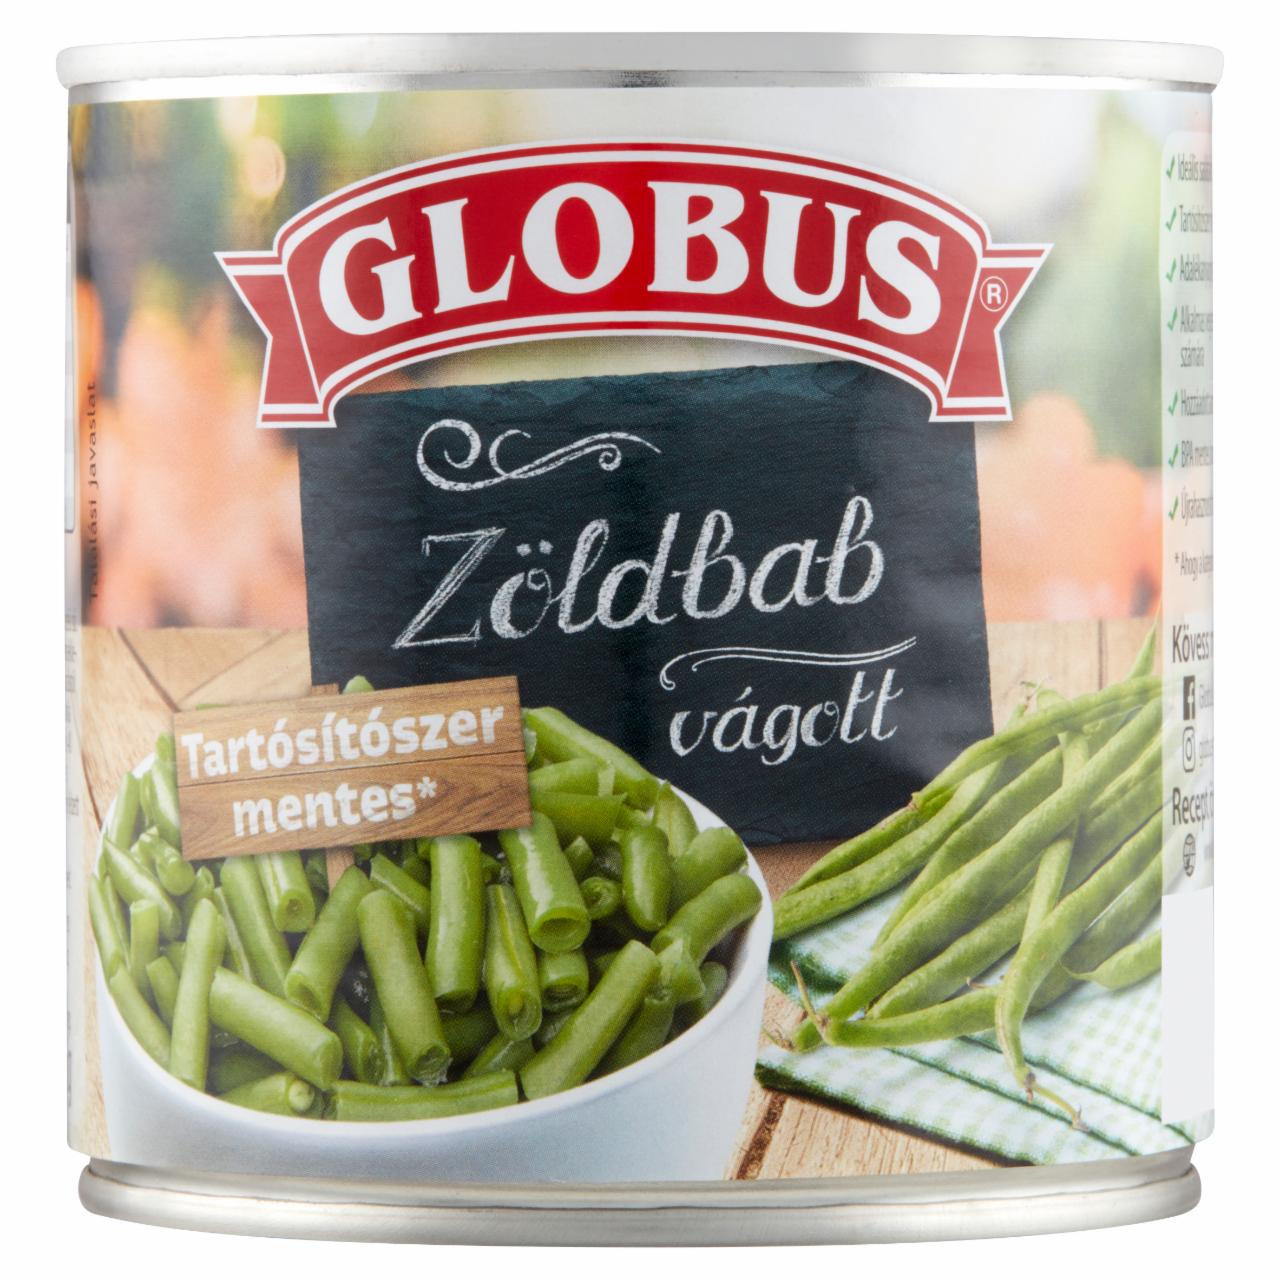 Képek - Globus vágott zöldbab 400 g